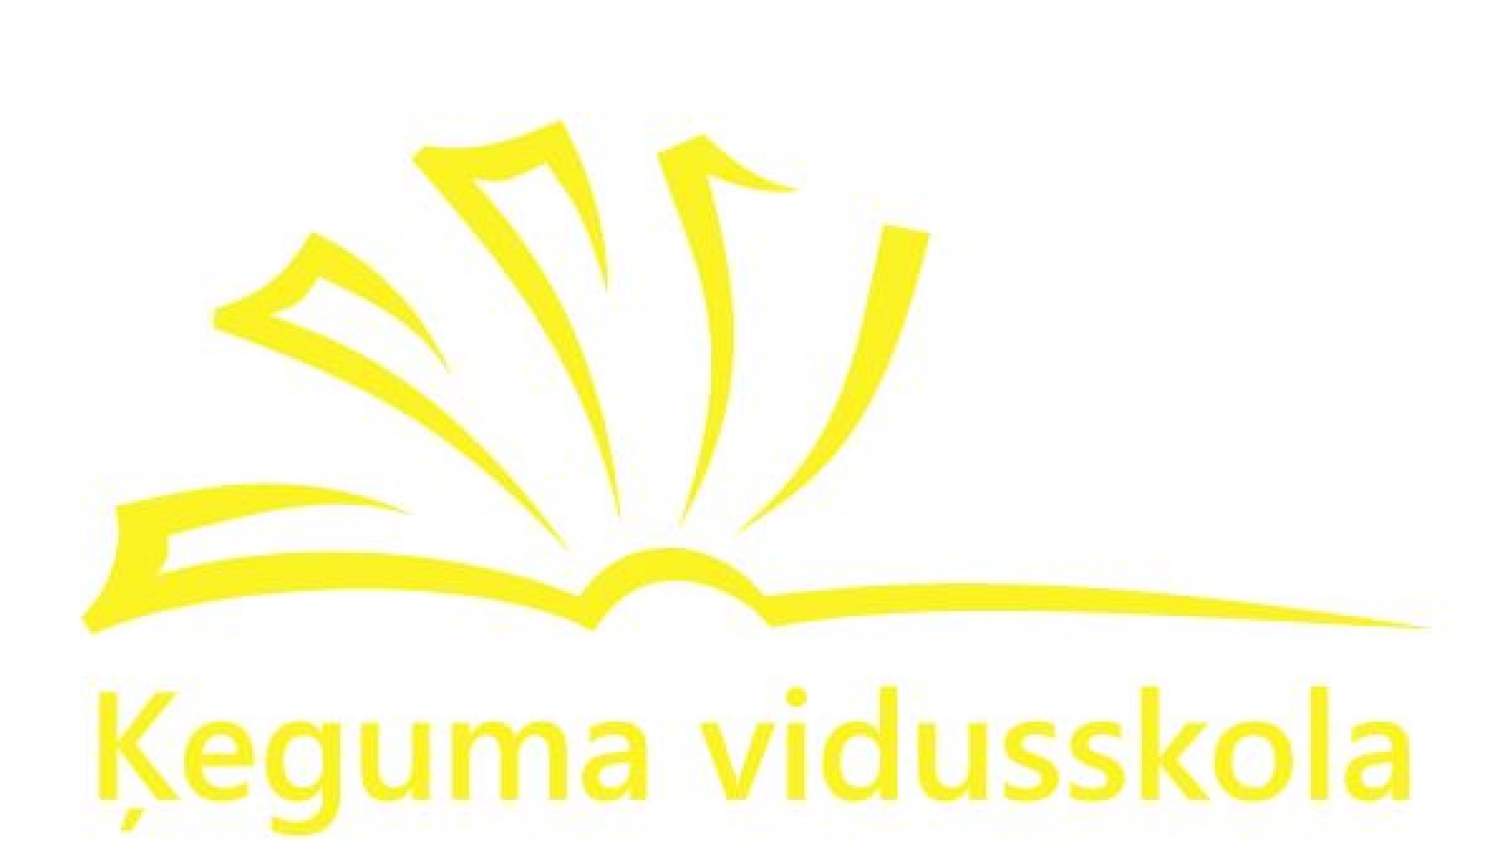 ķeguma vidusskola logo